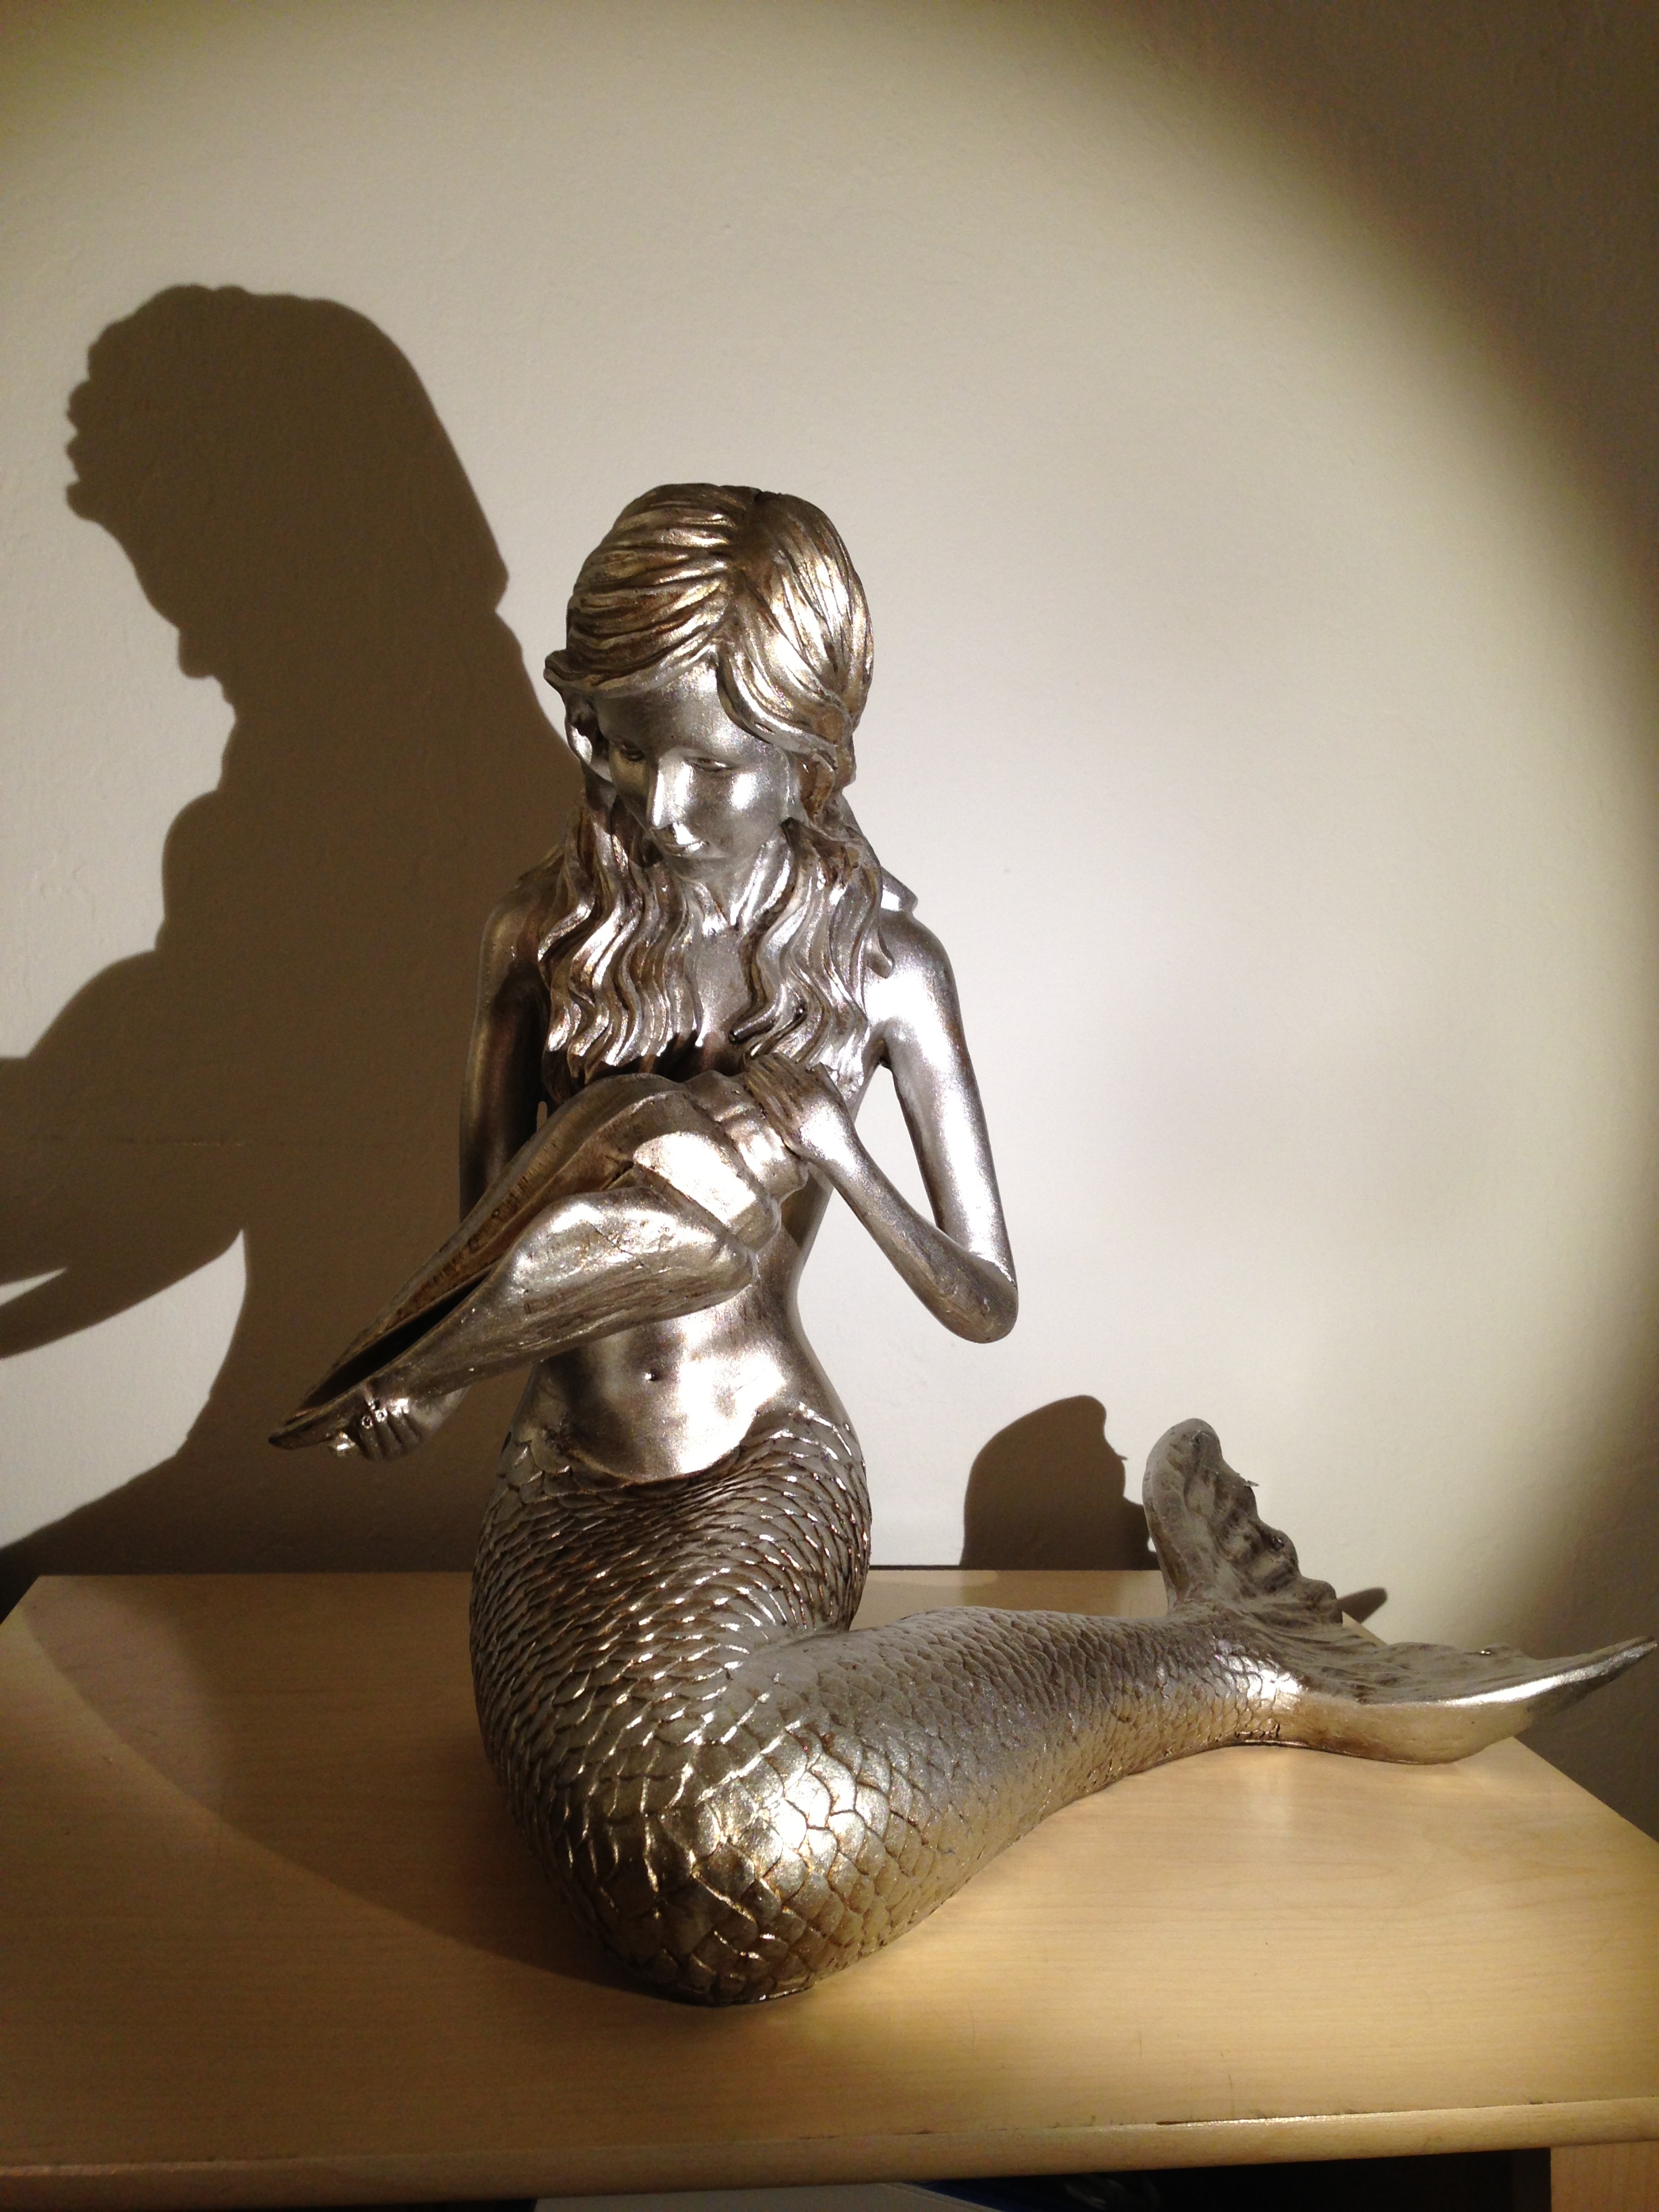 Golden Mermaid 12" statue